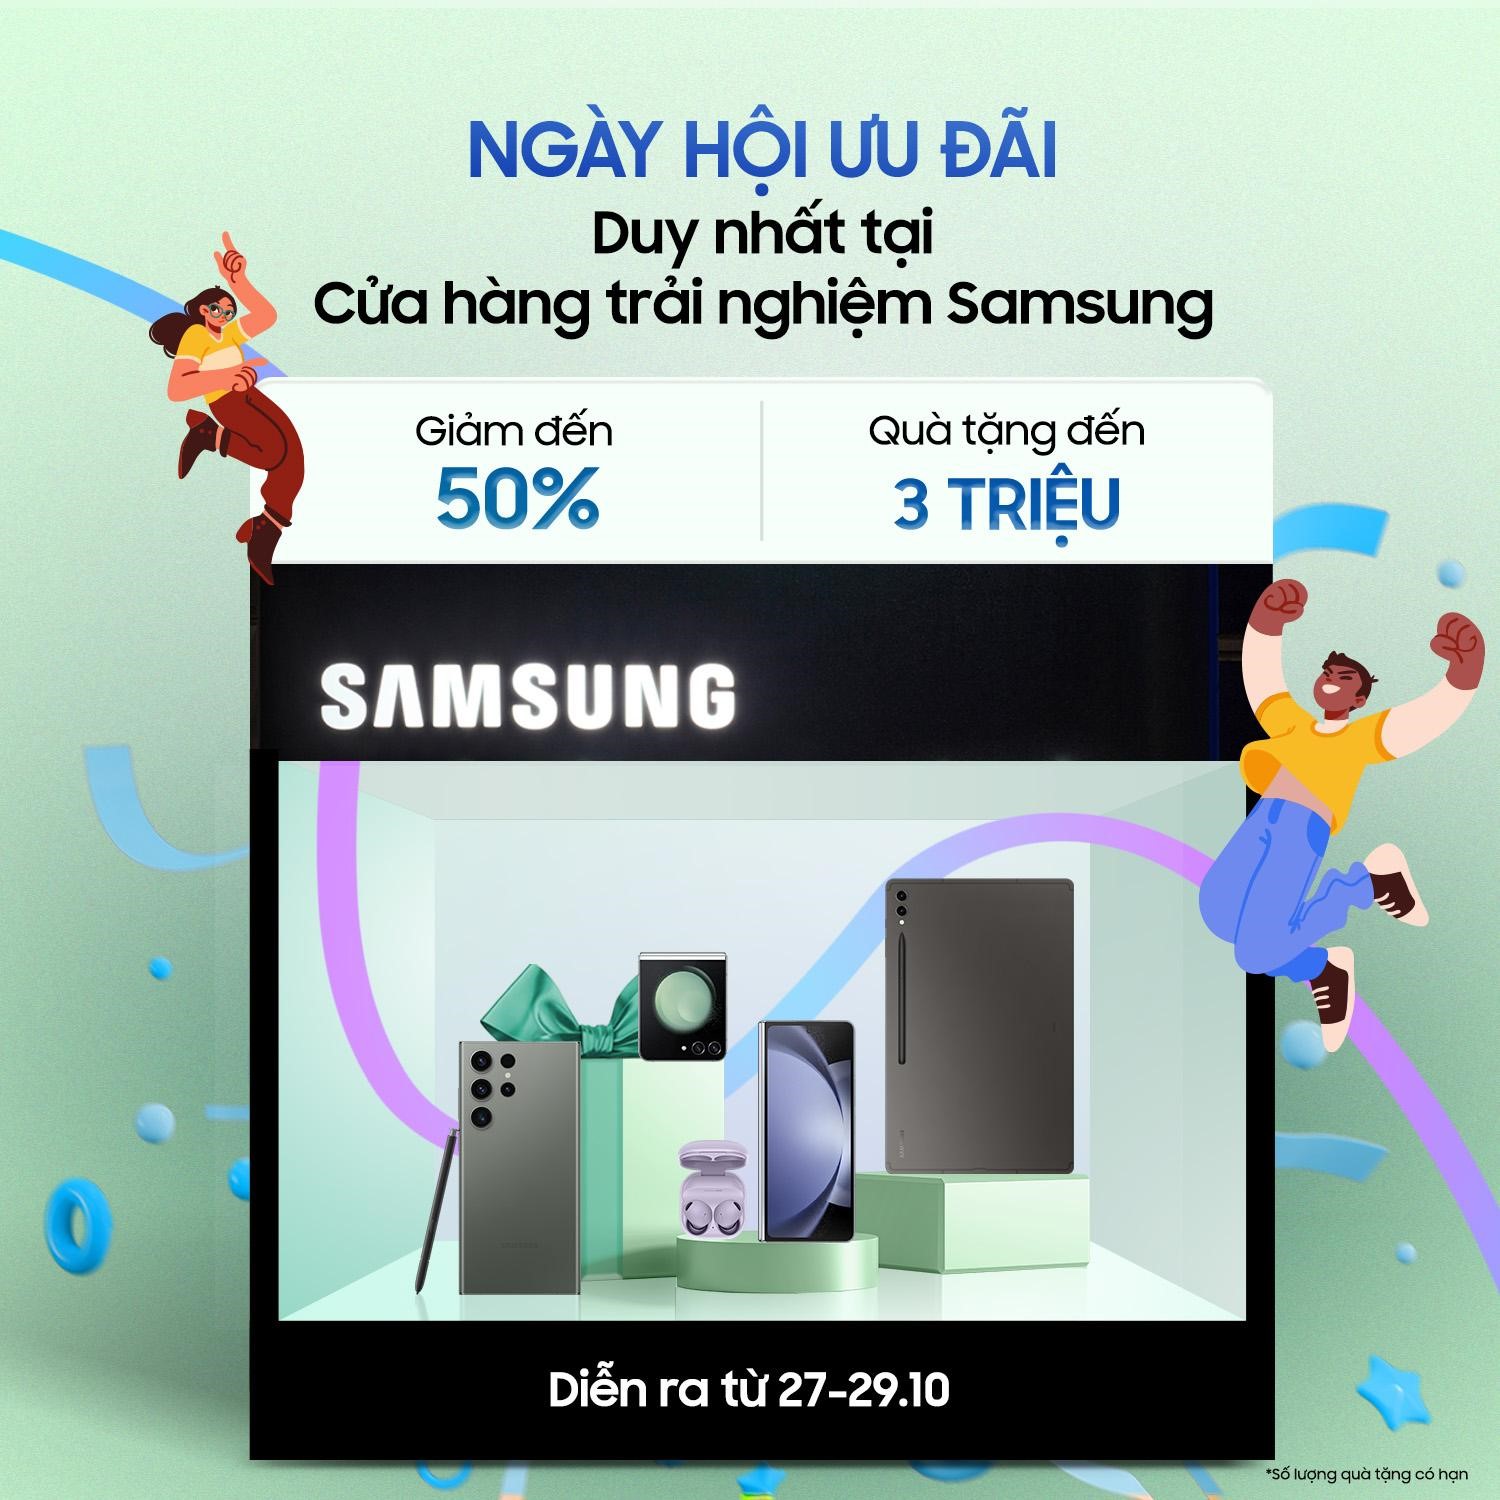 Duy nhất tại Cửa Hàng Trải Nghiệm Samsung: Tạo dáng check-in nhận về bộ quà tặng độc quyền từ Samsung - ảnh 5